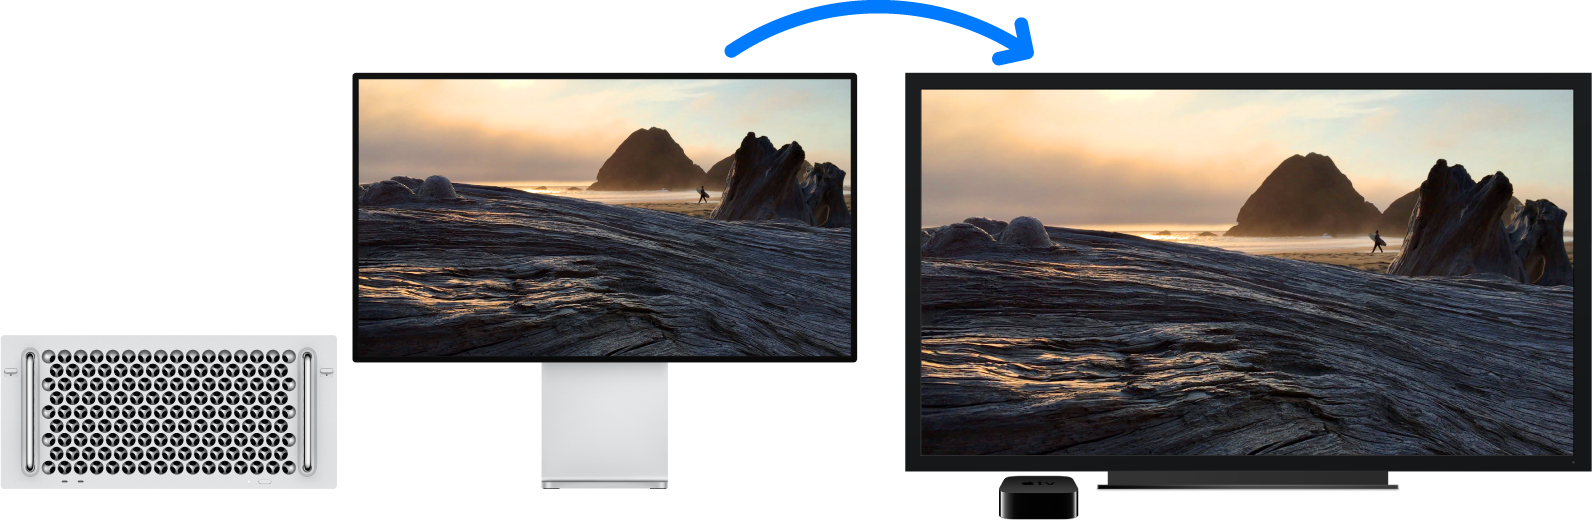 Apple TVを使ってMac Proのコンテンツが大きなHDTVにミラーリングされています。